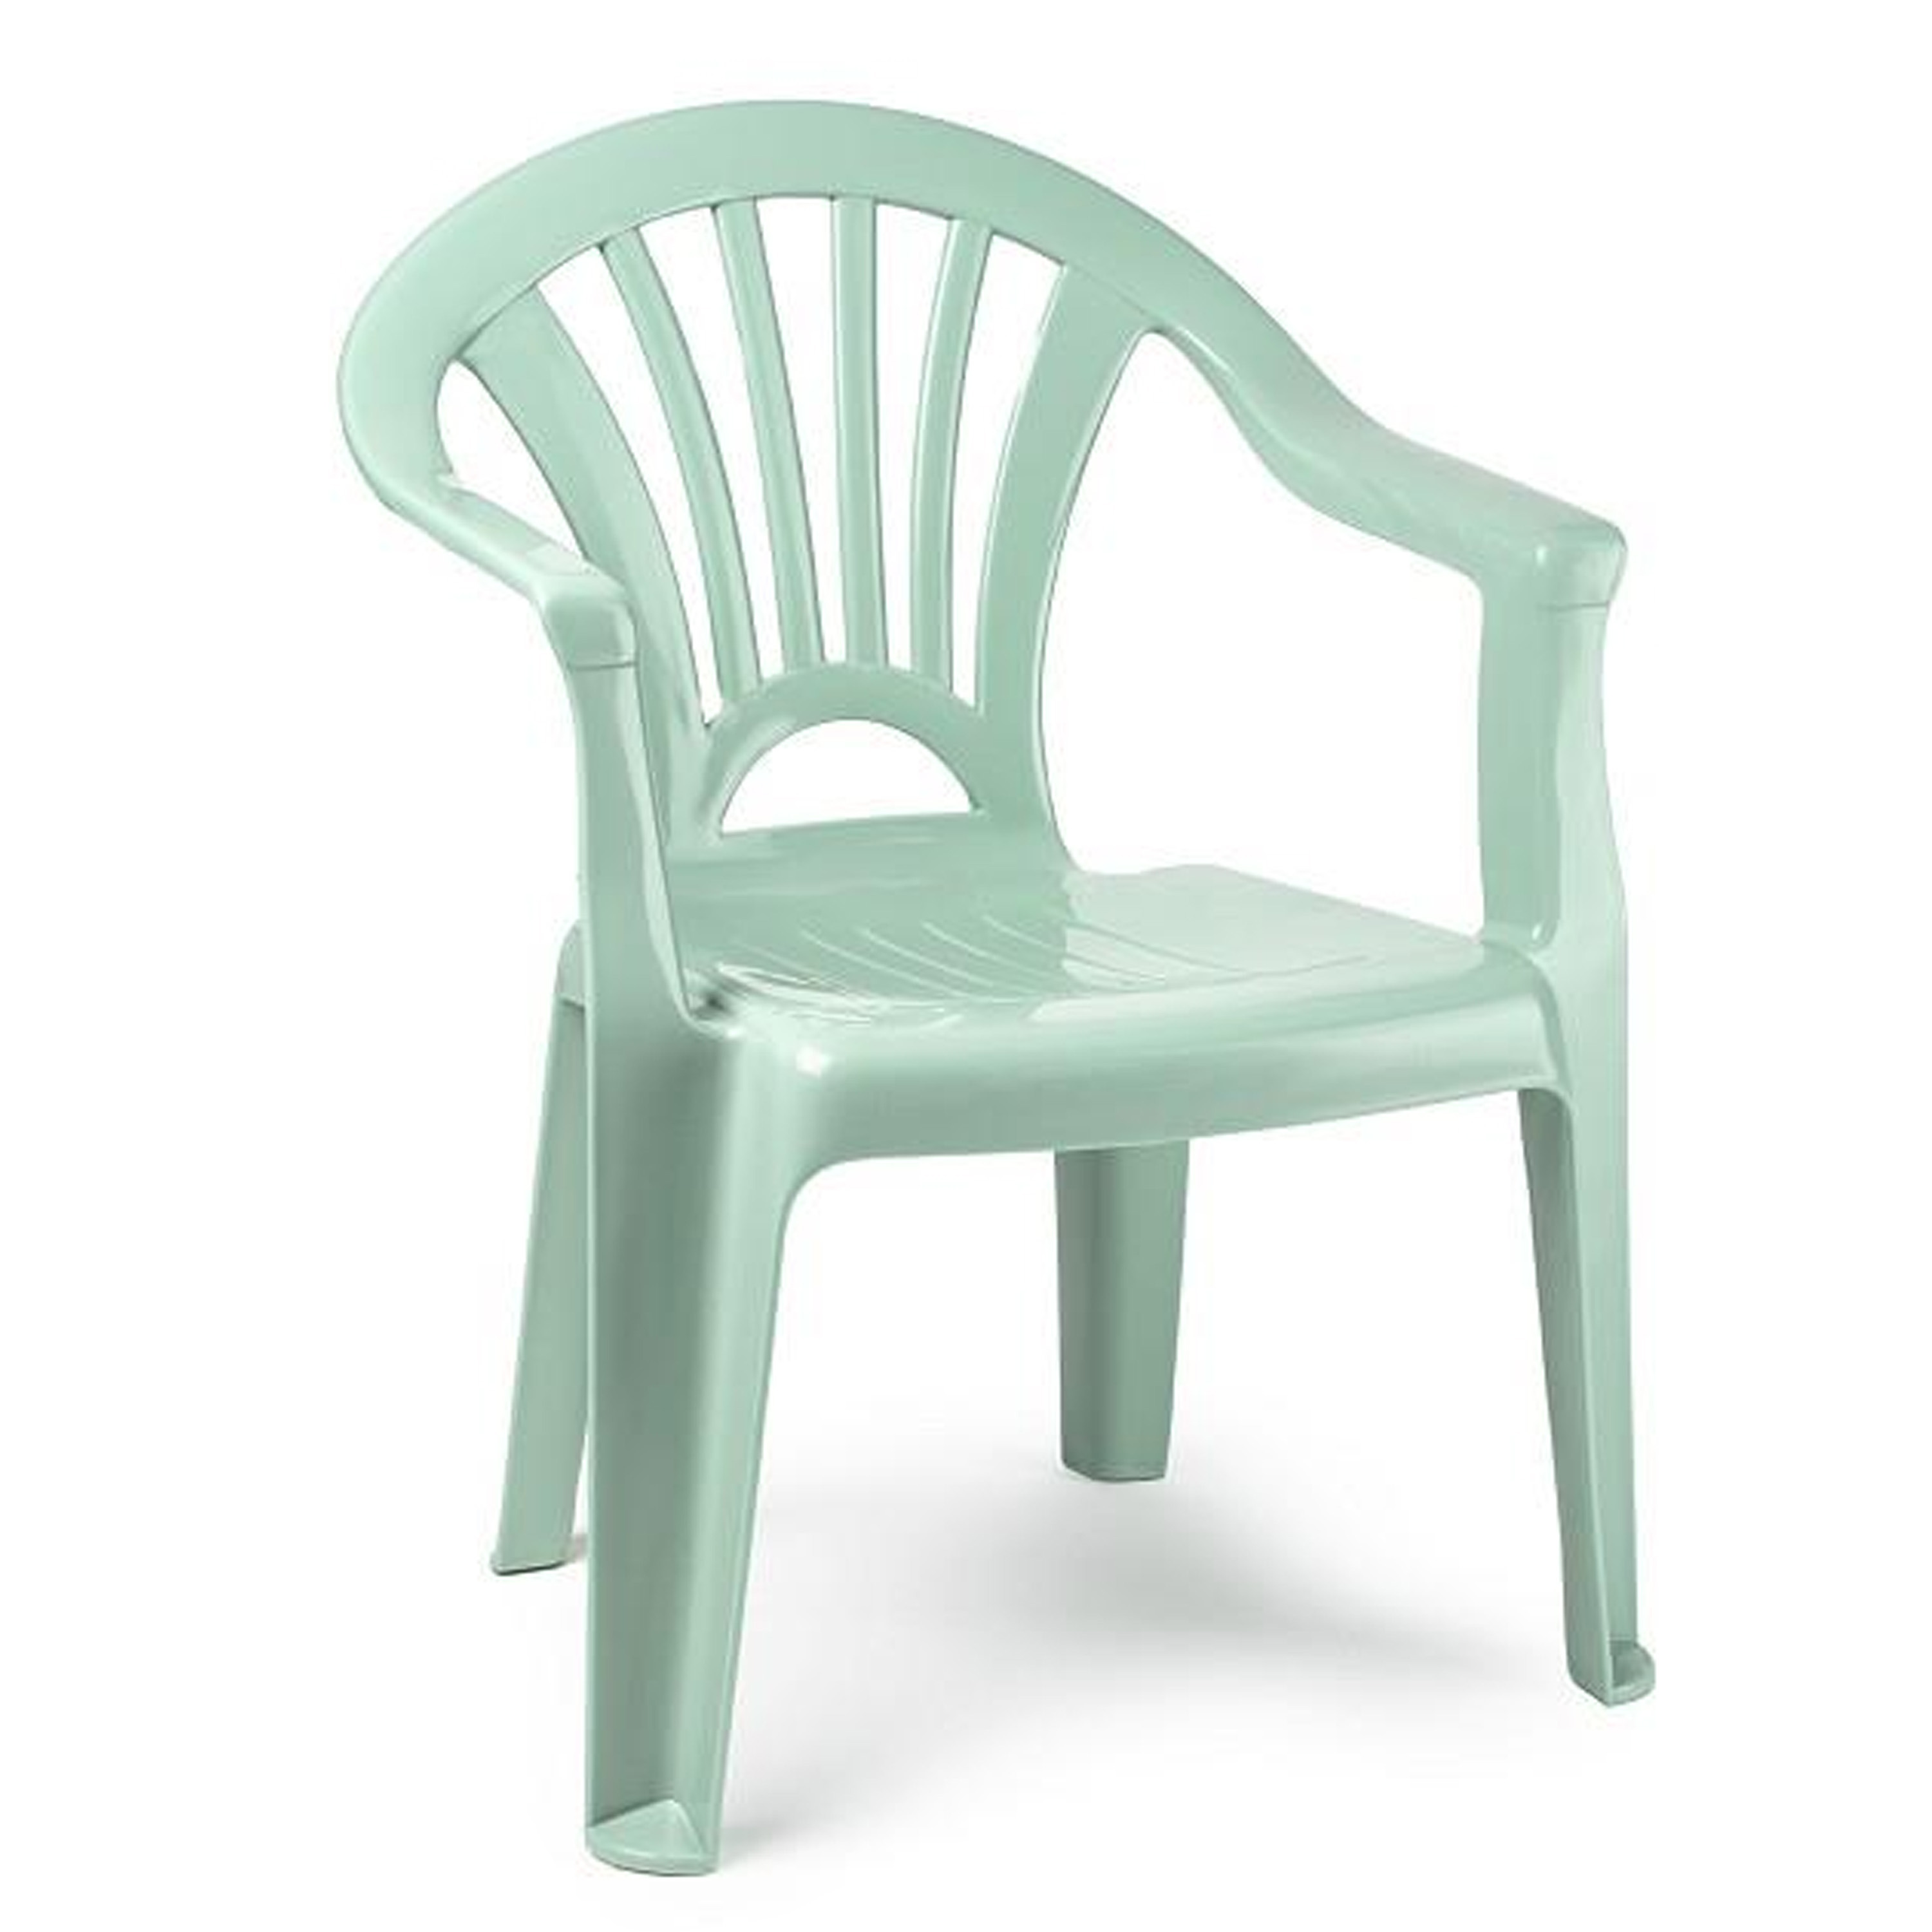 PlasticForte Kinderstoel van kunststof - mintgroen - 35 x 28 x 50 cm - tuin/camping/slaapkamer -